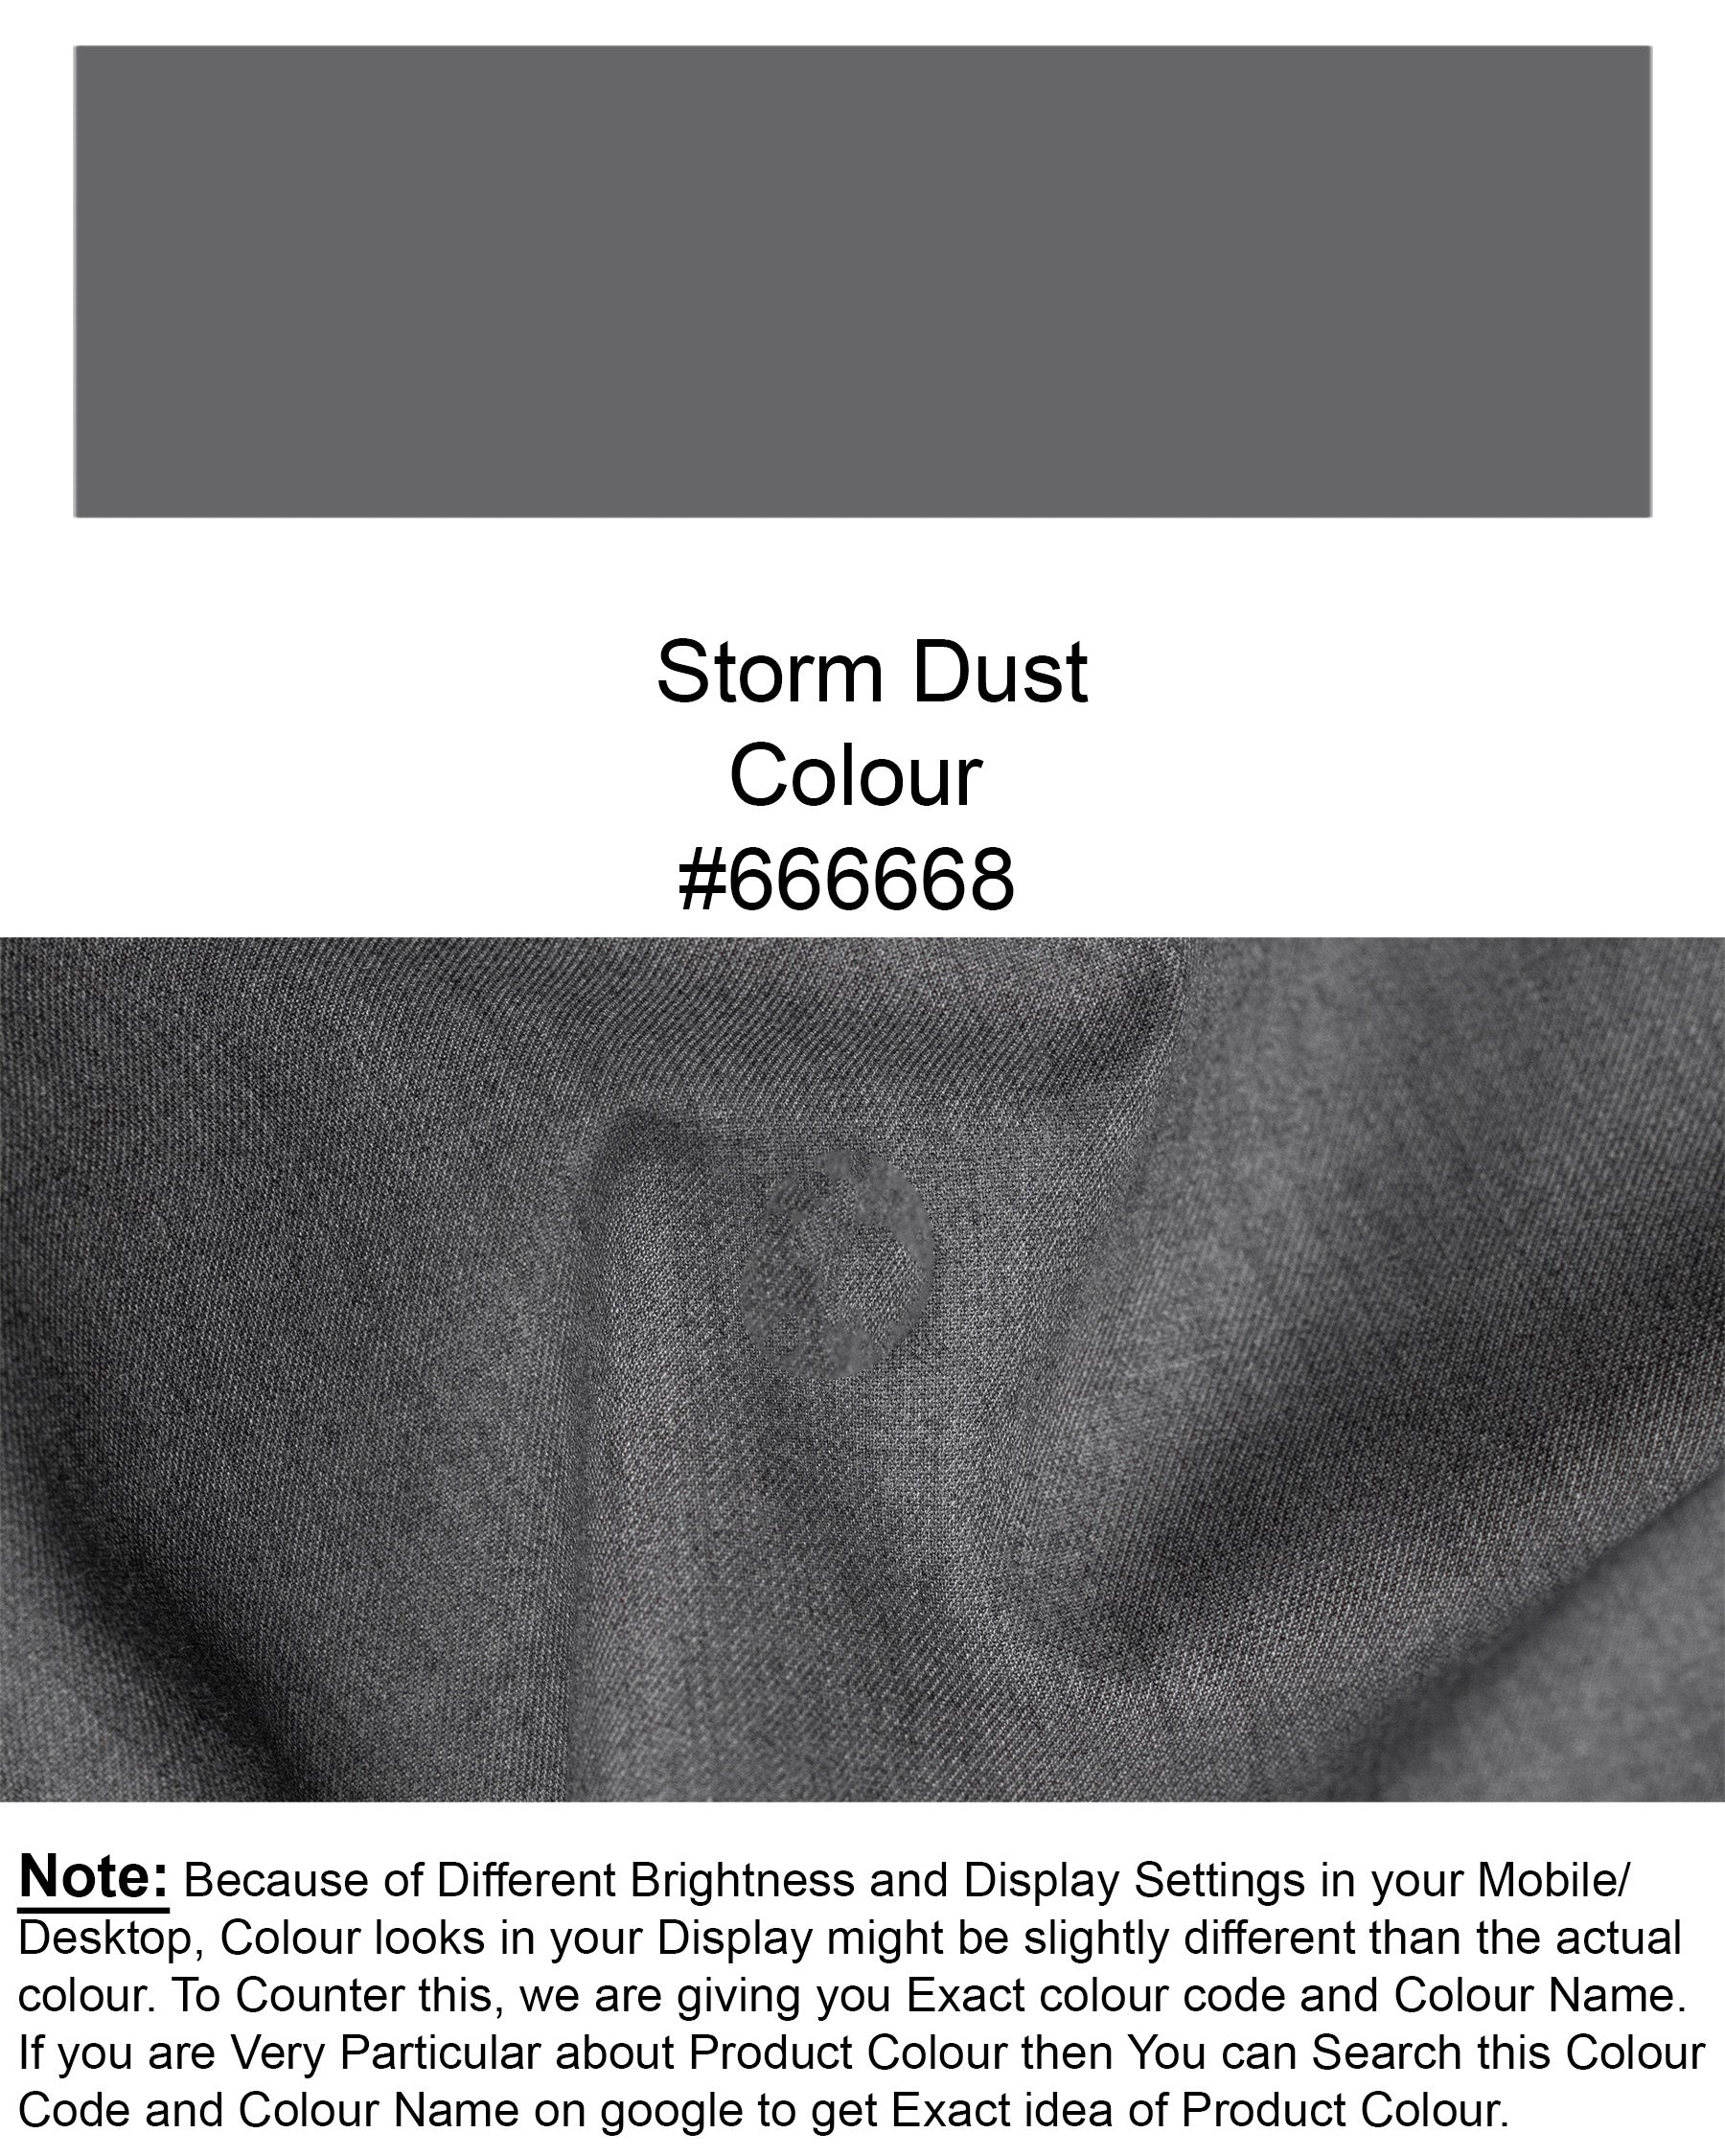 Storm Dust Grey Woolrich Cross buttoned Bandhgala Blazer BL1631-CBG2-36, BL1631-CBG2-38, BL1631-CBG2-40, BL1631-CBG2-42, BL1631-CBG2-44, BL1631-CBG2-46, BL1631-CBG2-48, BL1631-CBG2-50, BL1631-CBG2-52, BL1631-CBG2-54, BL1631-CBG2-56, BL1631-CBG2-58, BL1631-CBG2-60